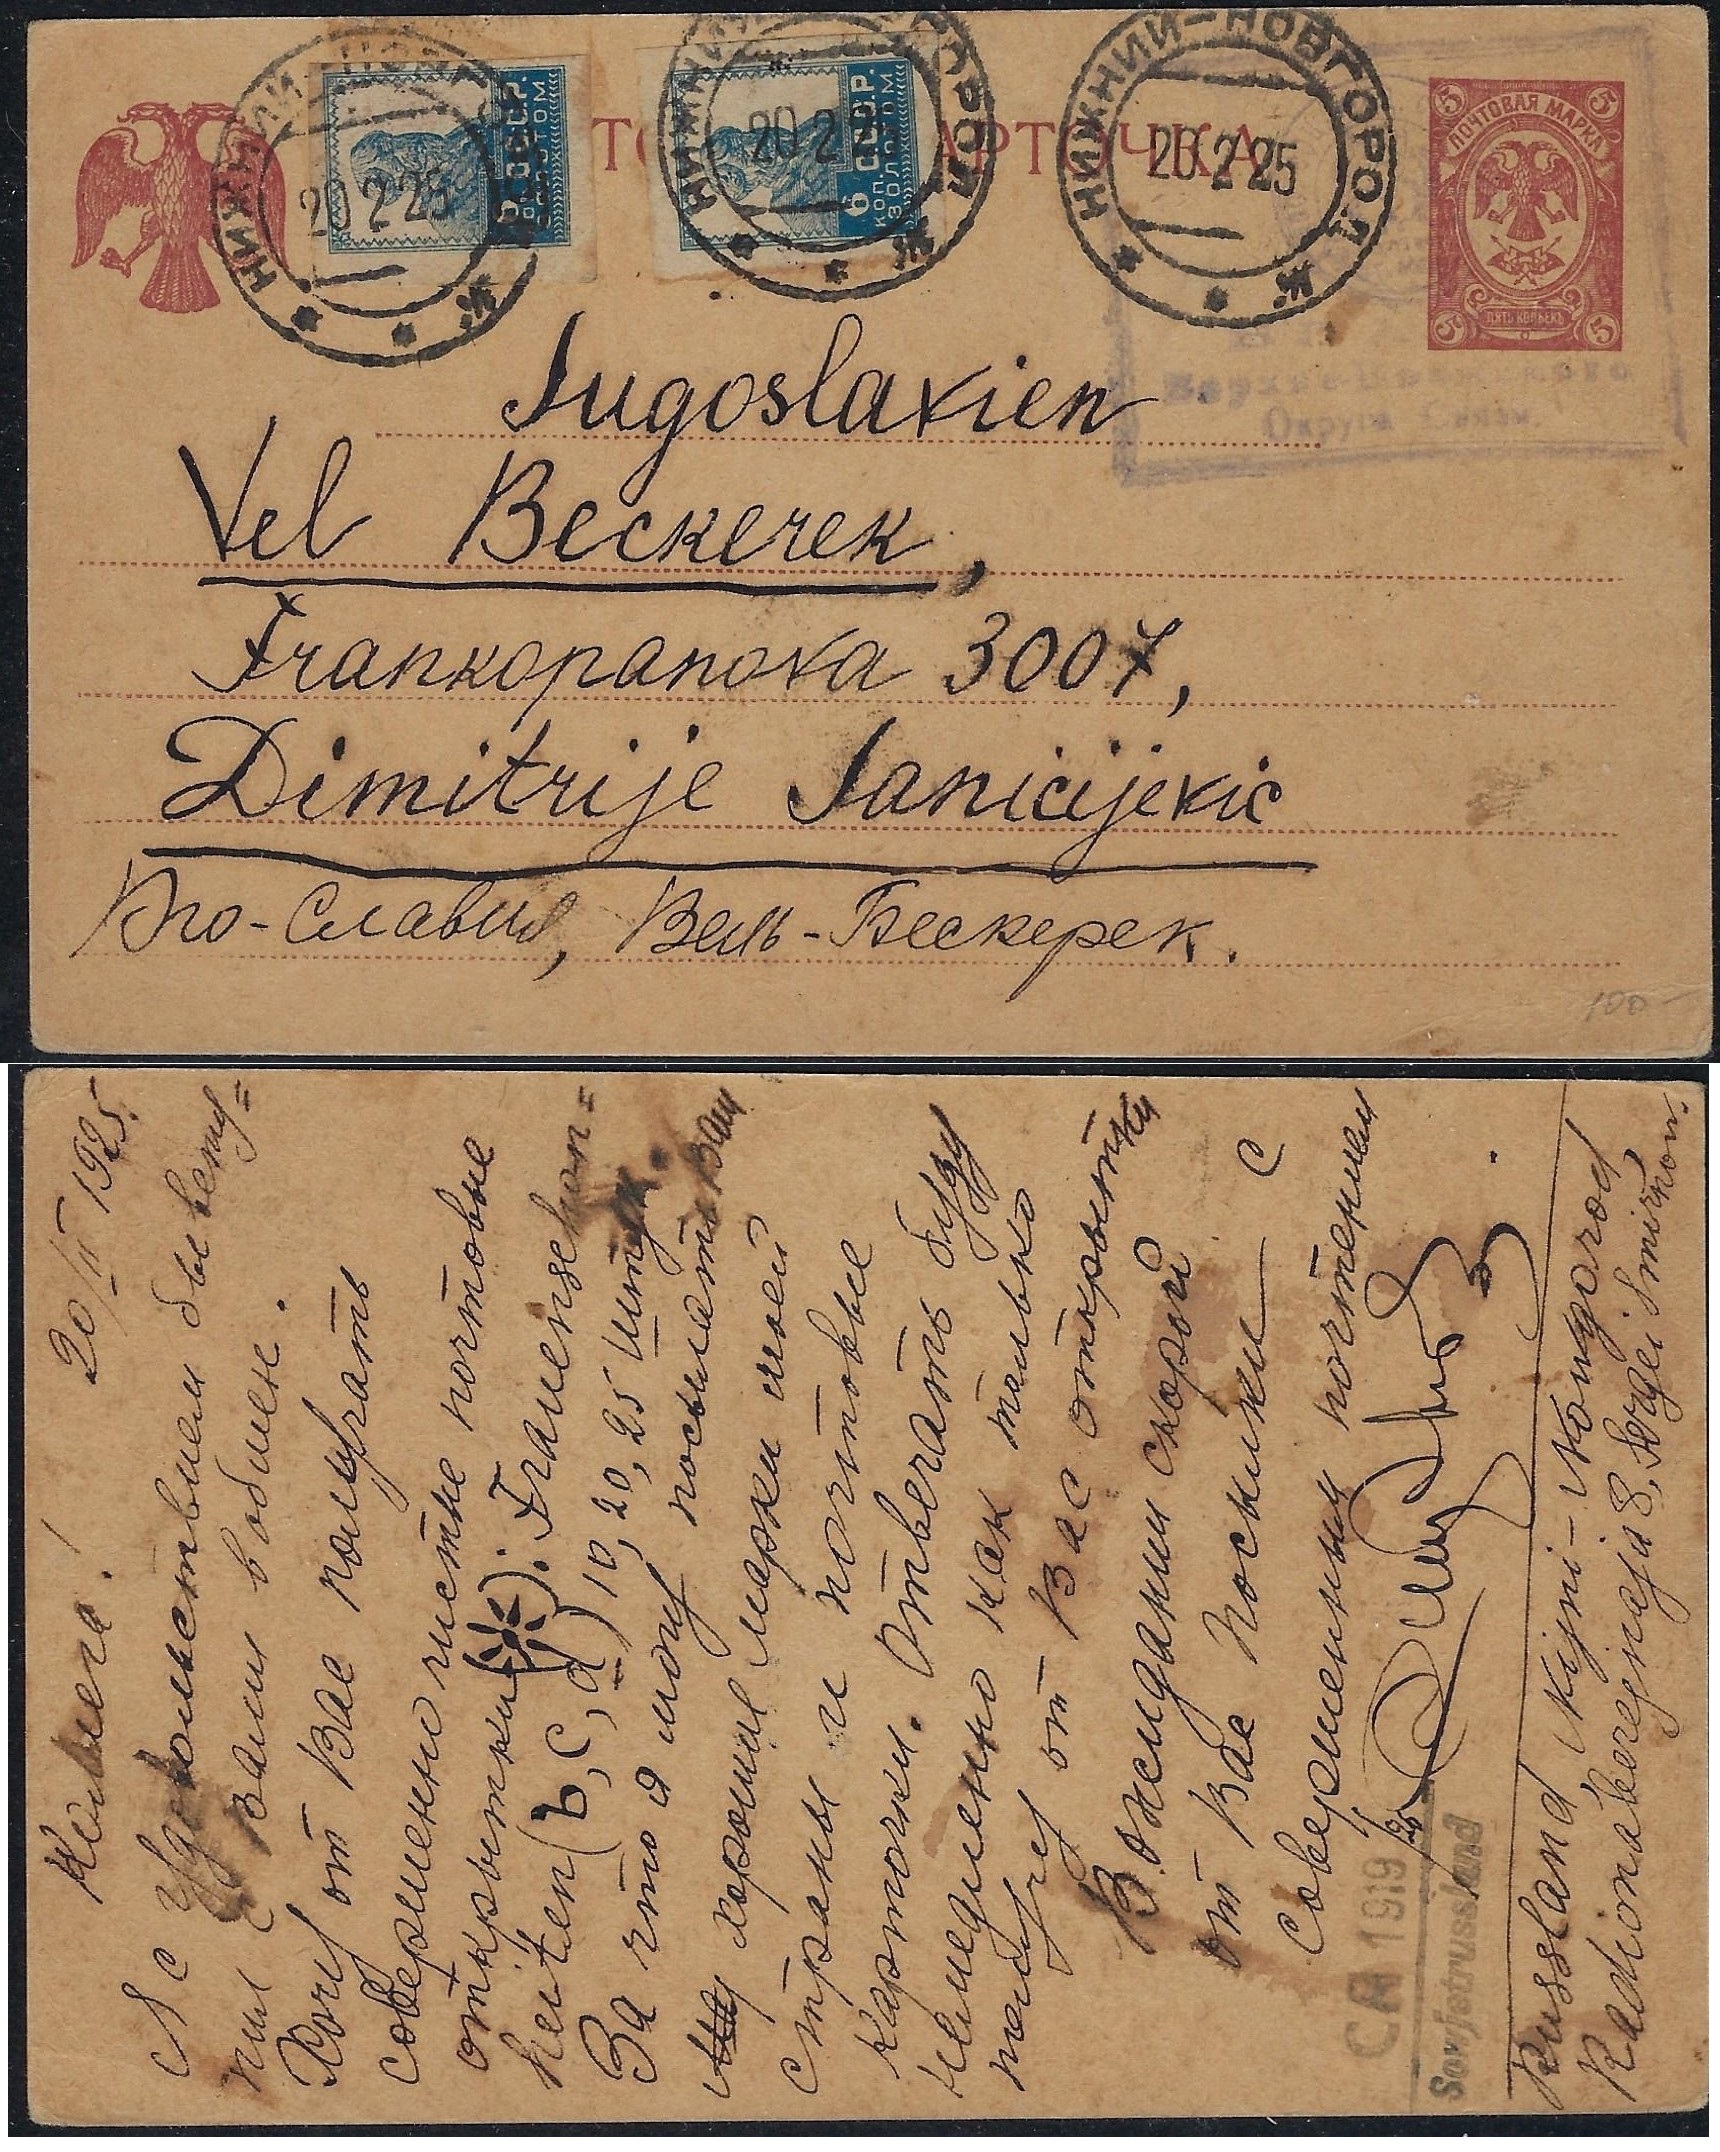 Postal Stationery - Soviet Union Scott 21 